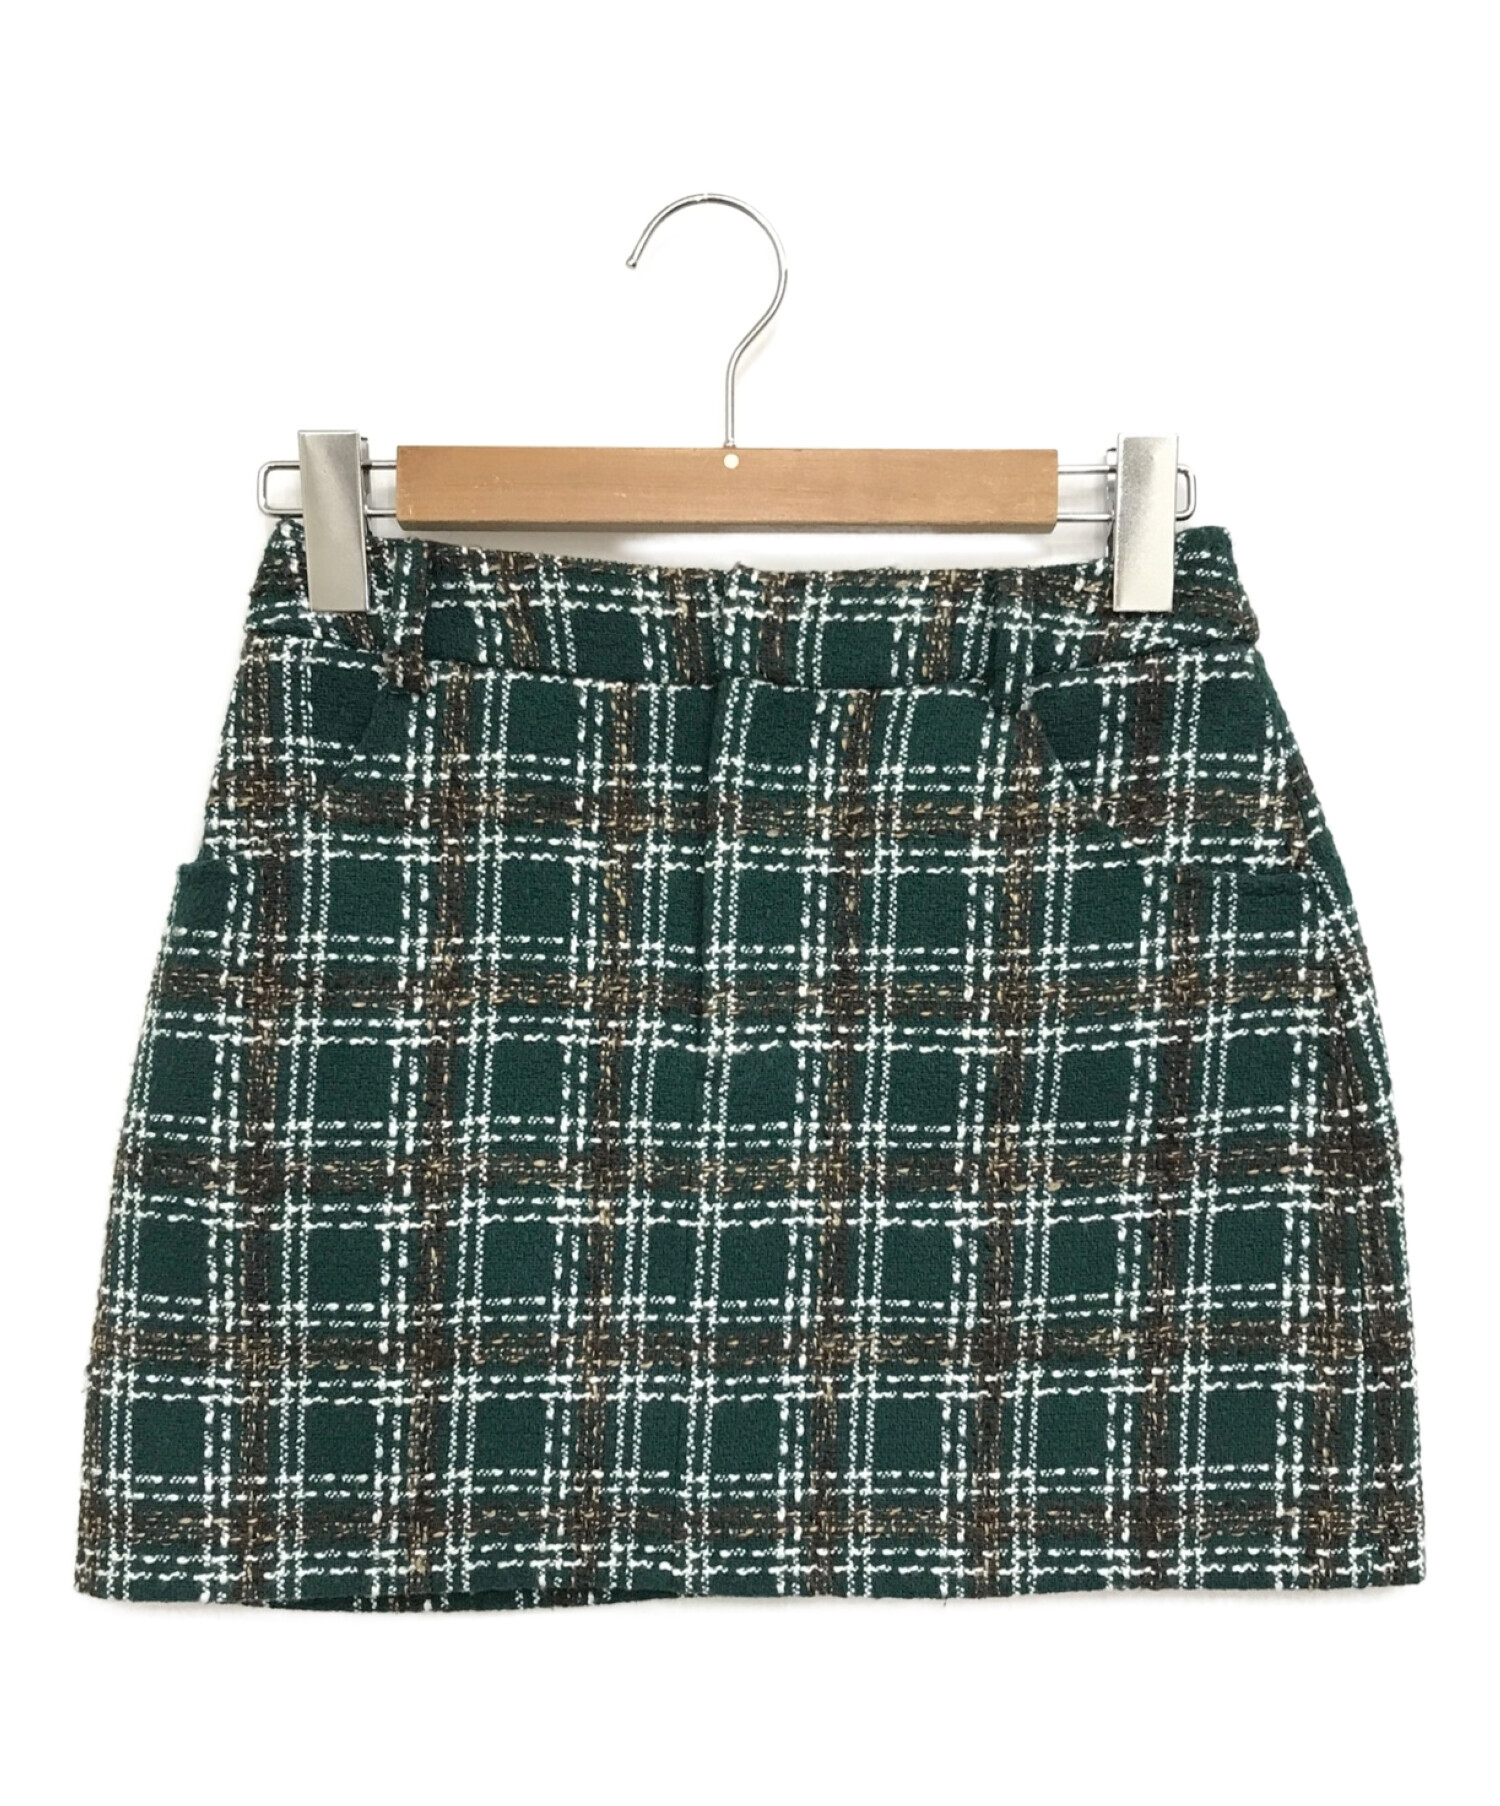 グリーン タータンチェック ミニスカート - スカート